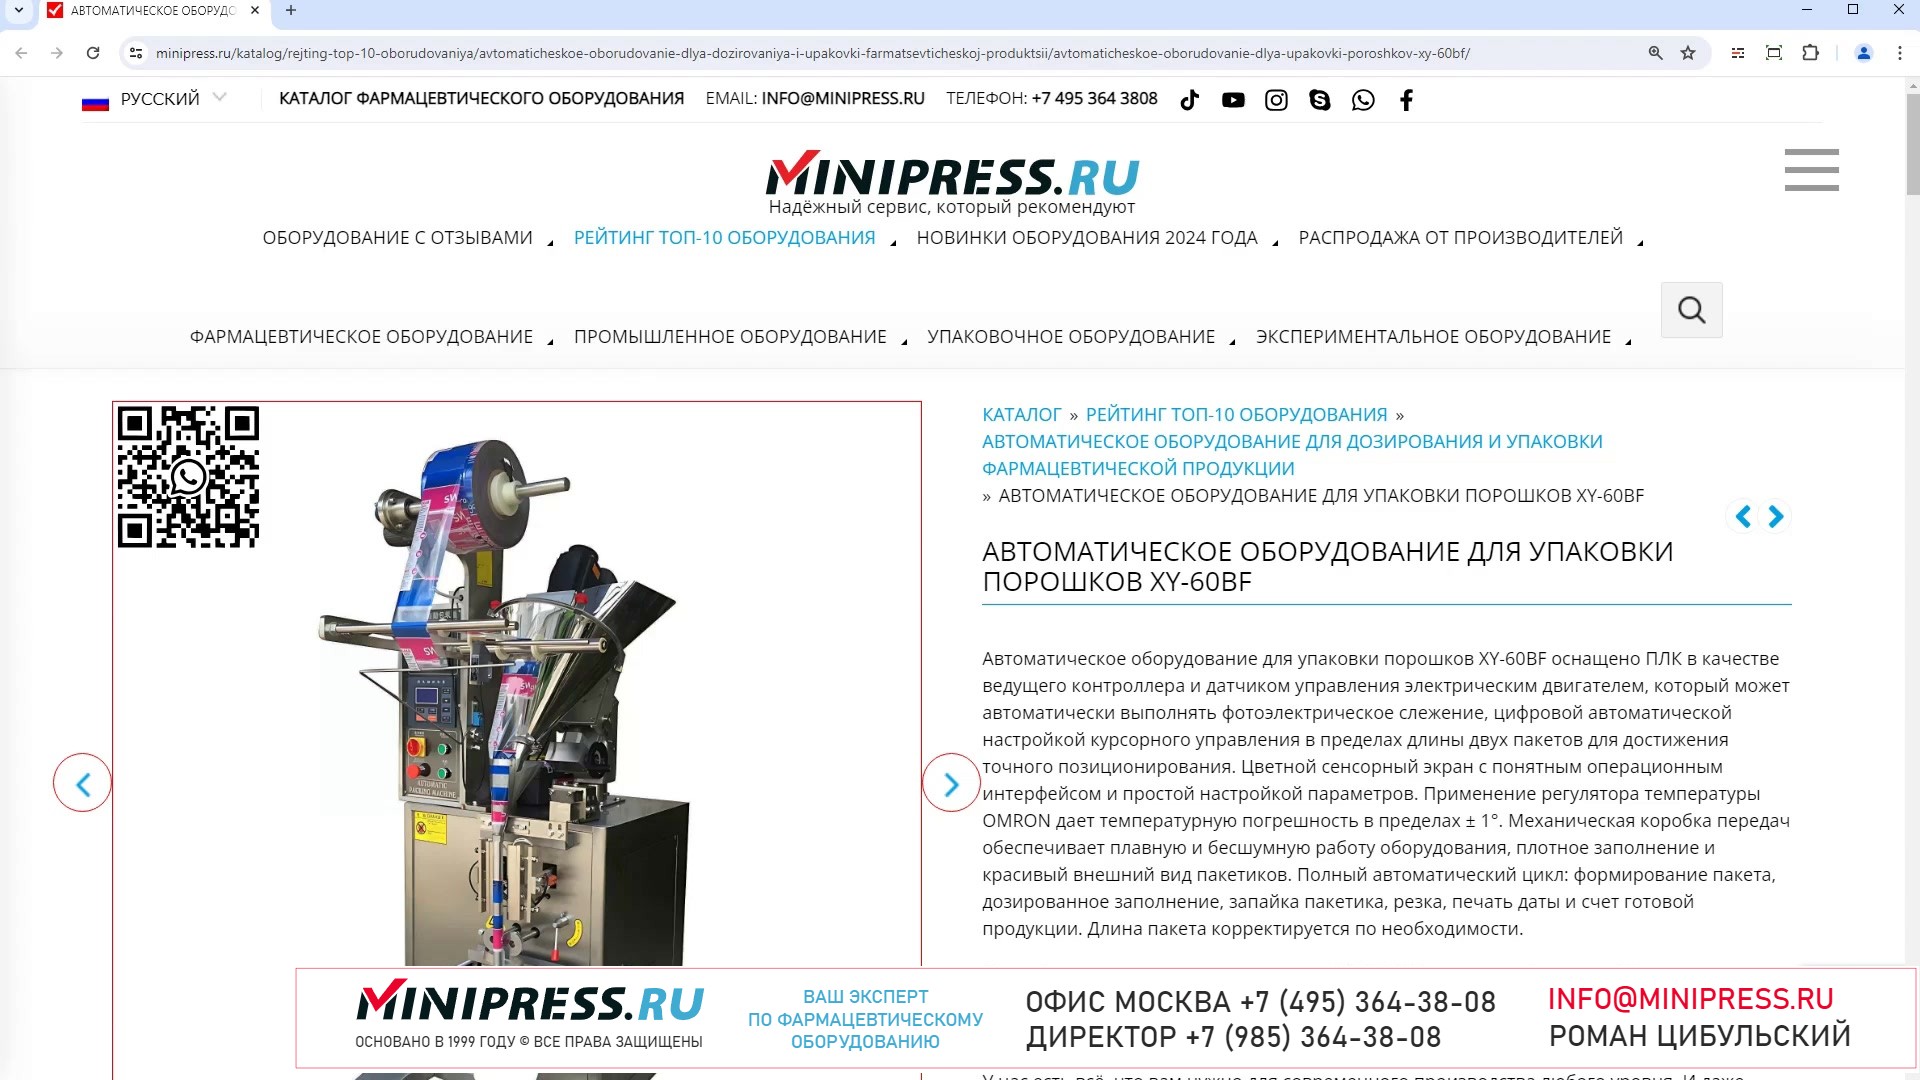 Minipress.ru Автоматическое оборудование для упаковки порошков XY-60BF